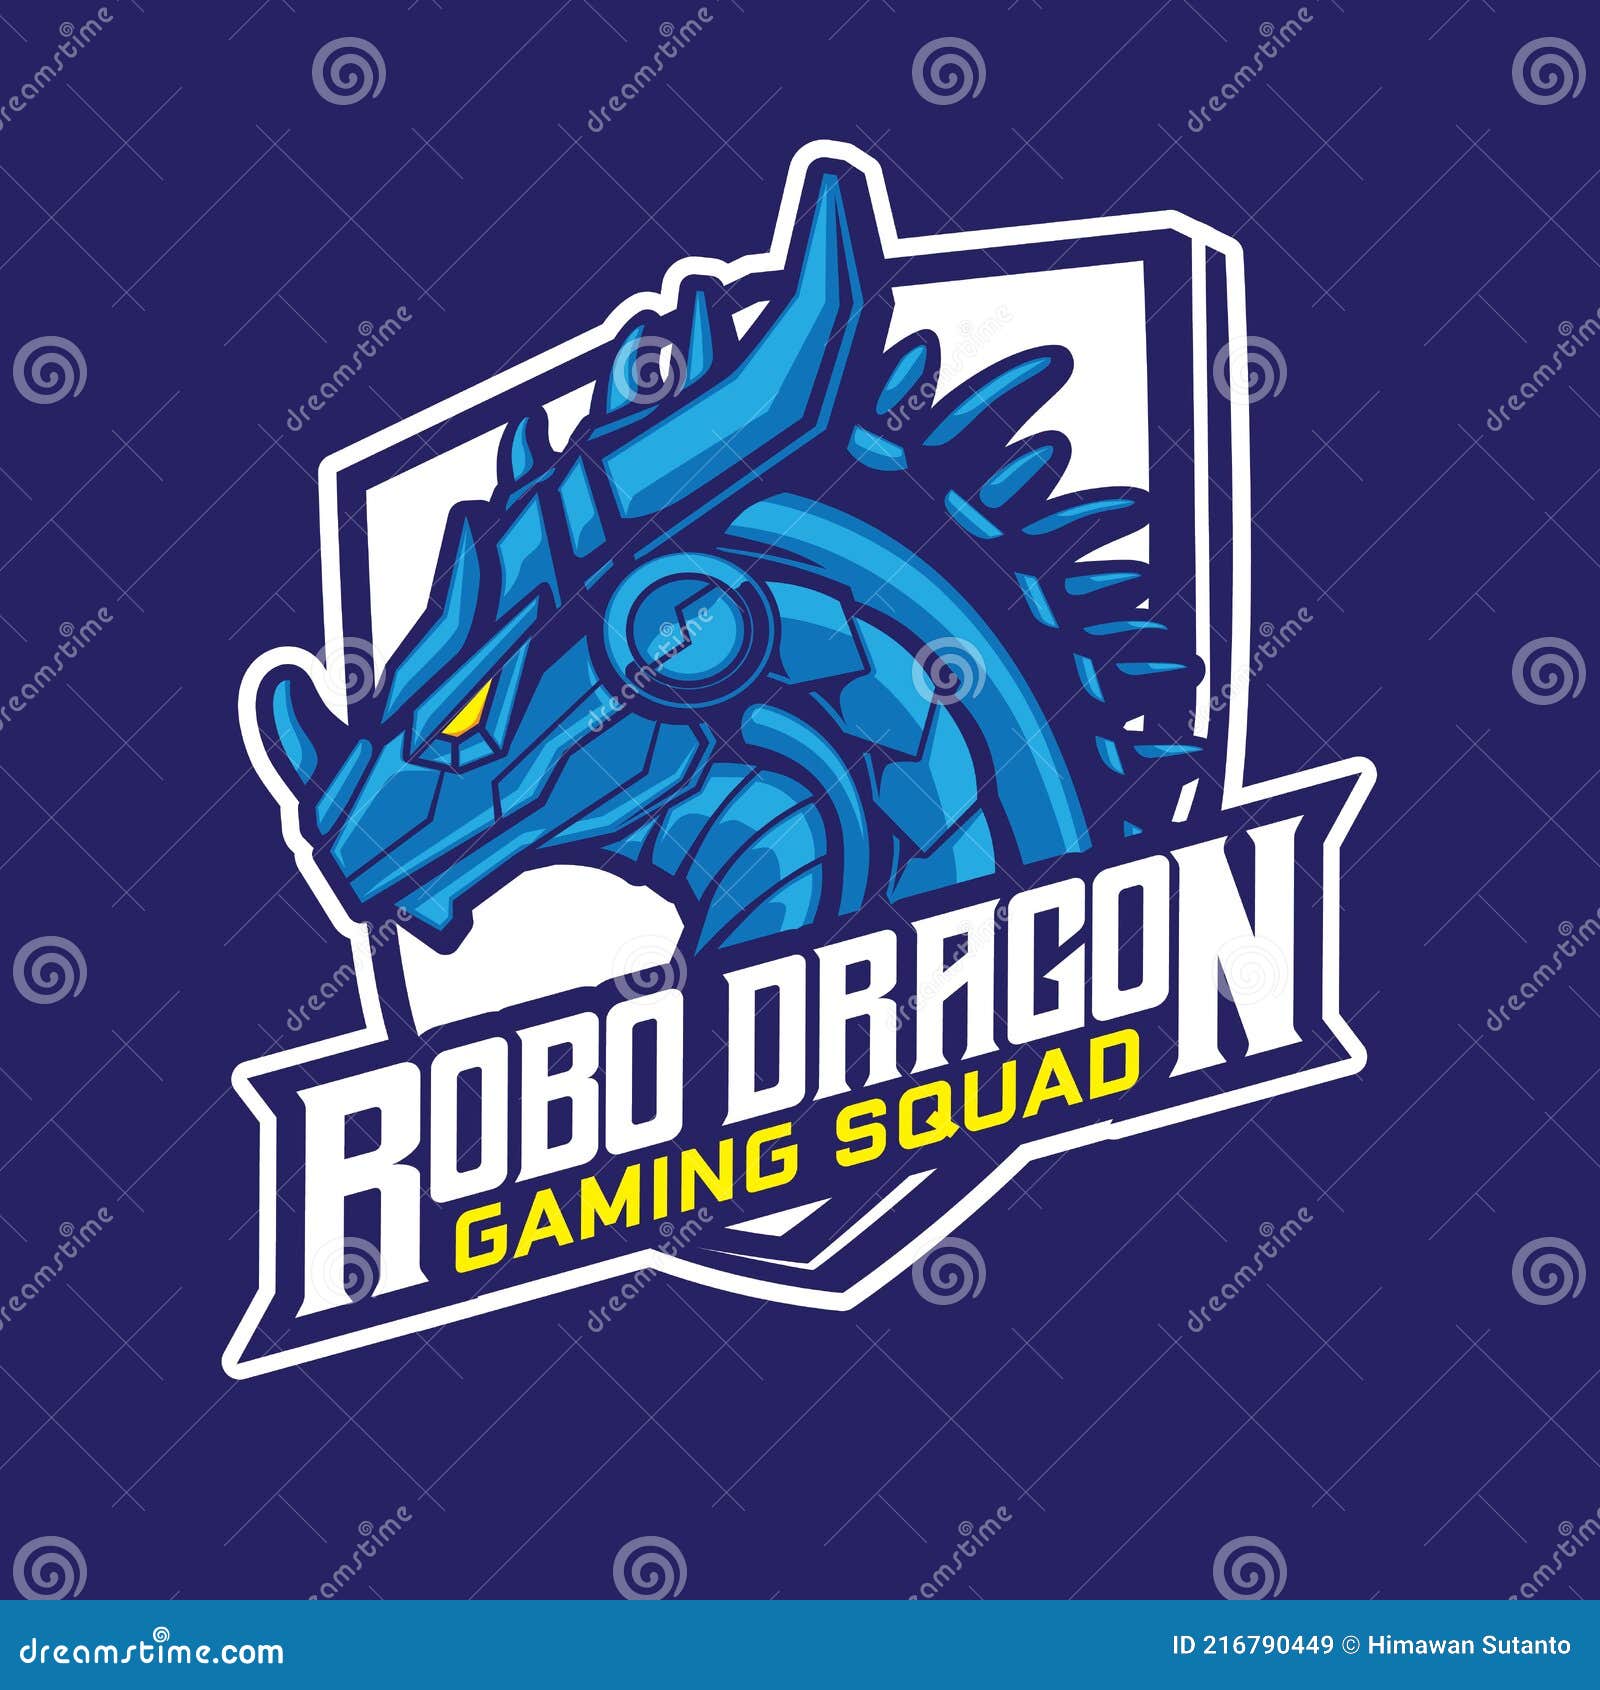 robo dragon e sport gaming logo 